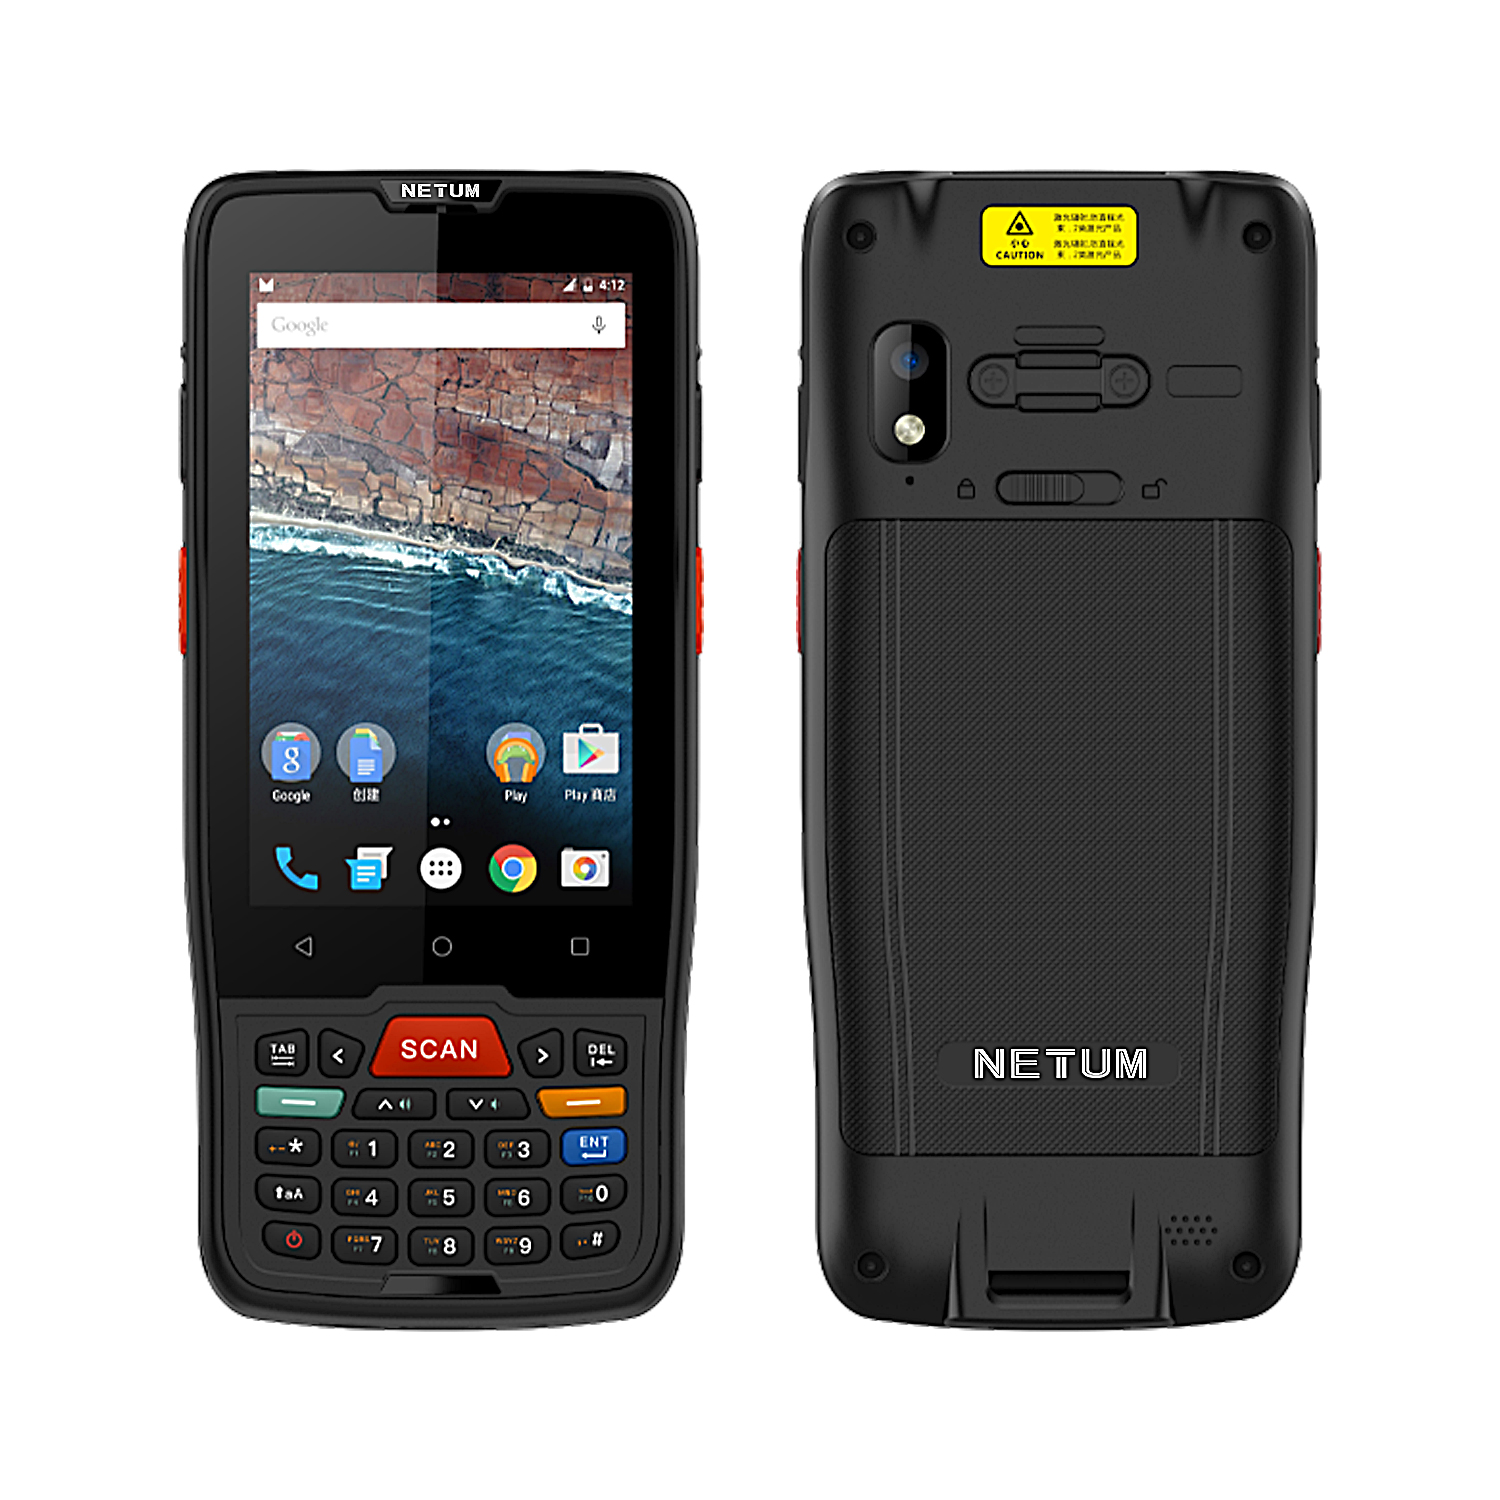 Купете NETUM PDA-D7100, NT-M71 PDA Android терминал 2D баркод скенер Сензорен екран Android терминално устройство с WIFI 4G GPS,NETUM PDA-D7100, NT-M71 PDA Android терминал 2D баркод скенер Сензорен екран Android терминално устройство с WIFI 4G GPS Цена,NETUM PDA-D7100, NT-M71 PDA Android терминал 2D баркод скенер Сензорен екран Android терминално устройство с WIFI 4G GPS марка,NETUM PDA-D7100, NT-M71 PDA Android терминал 2D баркод скенер Сензорен екран Android терминално устройство с WIFI 4G GPS Производител,NETUM PDA-D7100, NT-M71 PDA Android терминал 2D баркод скенер Сензорен екран Android терминално устройство с WIFI 4G GPS Цитати. NETUM PDA-D7100, NT-M71 PDA Android терминал 2D баркод скенер Сензорен екран Android терминално устройство с WIFI 4G GPS Компания,